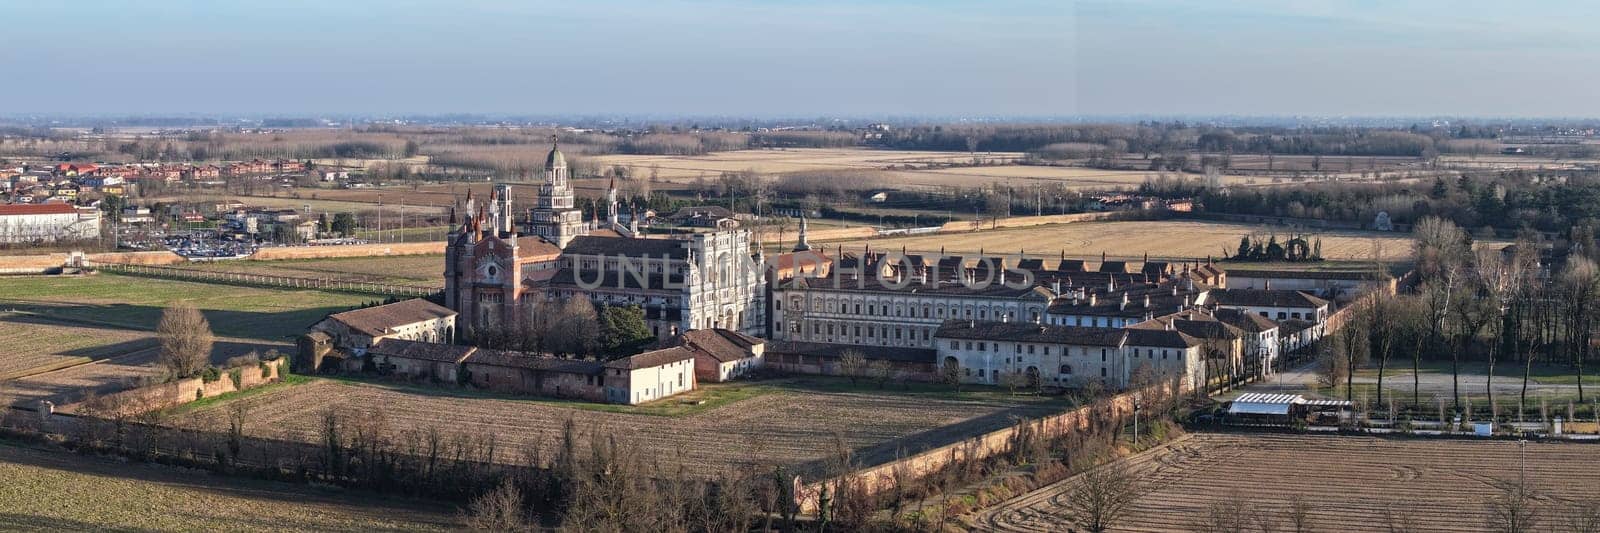 Nice panorama view of Certosa of Pavia monastery and sanctuary by Robertobinetti70